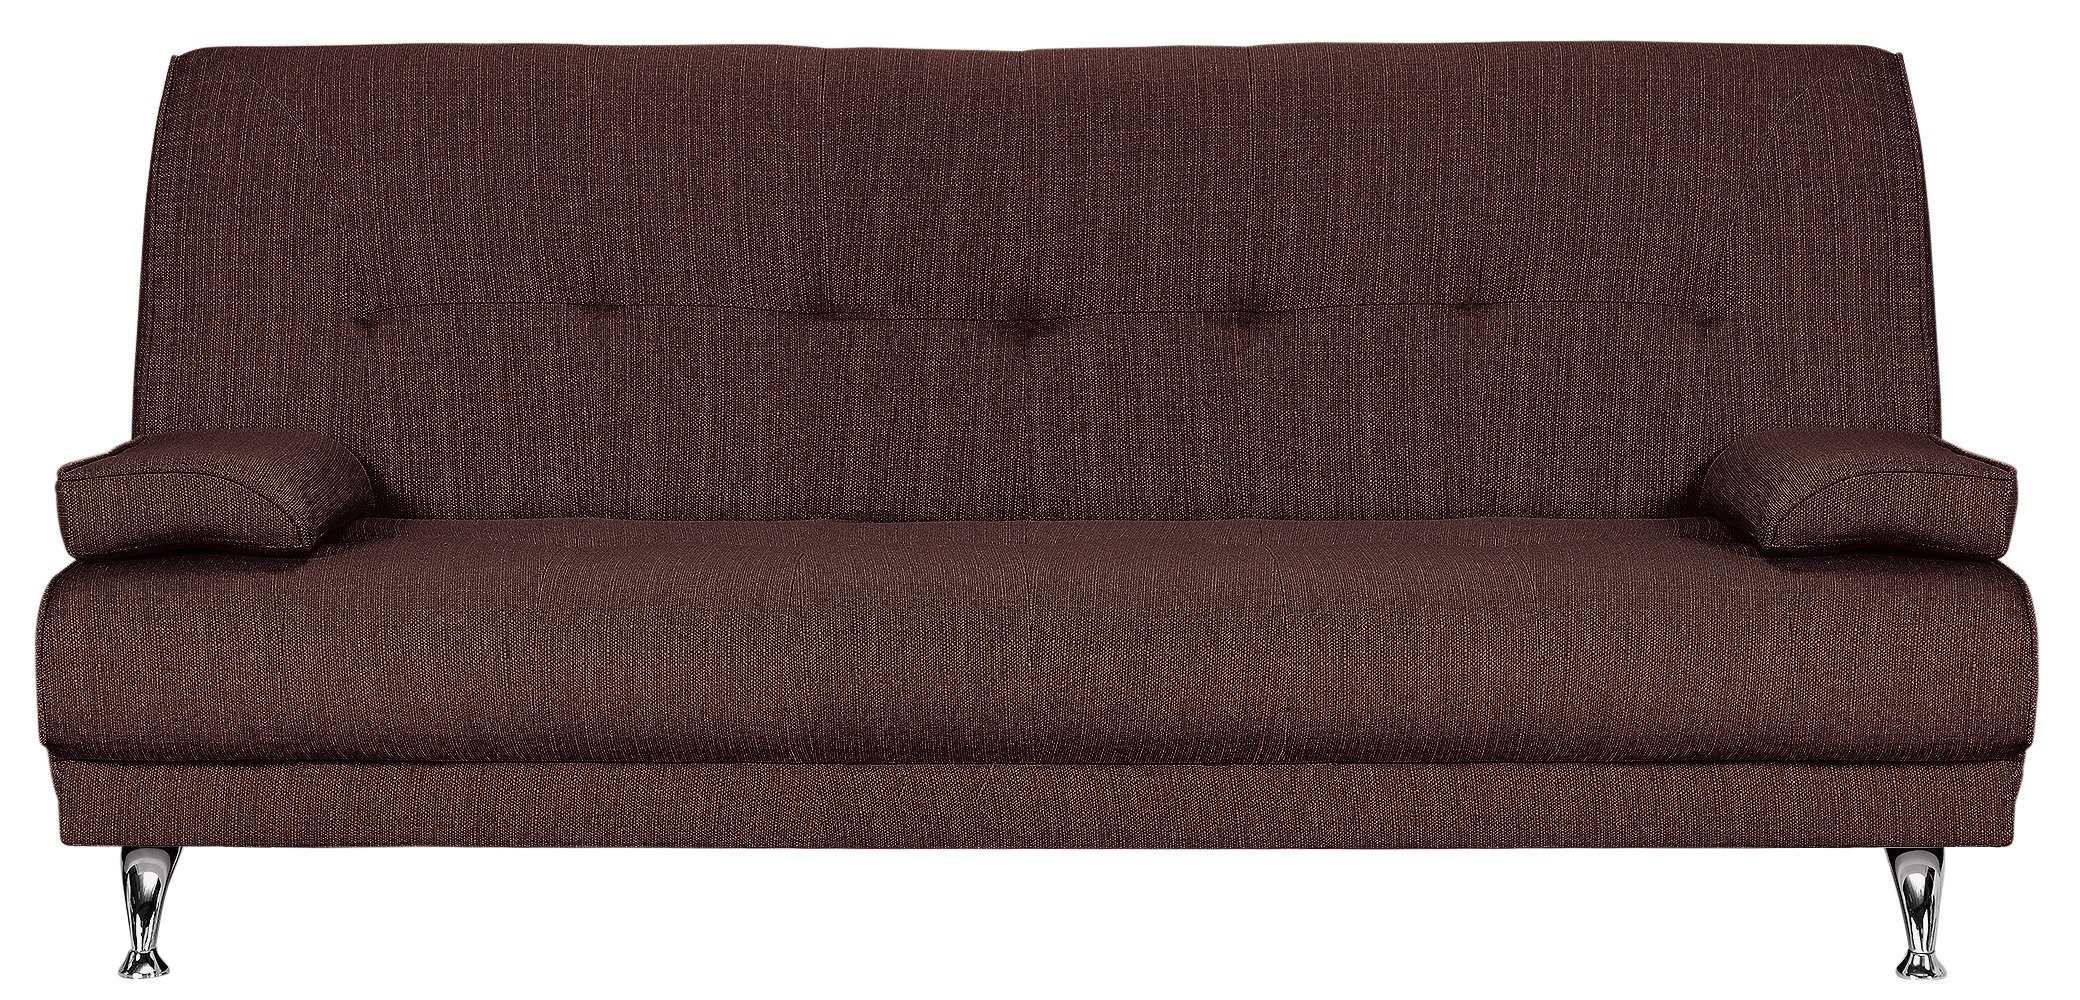 marwell clic clac sofa bed